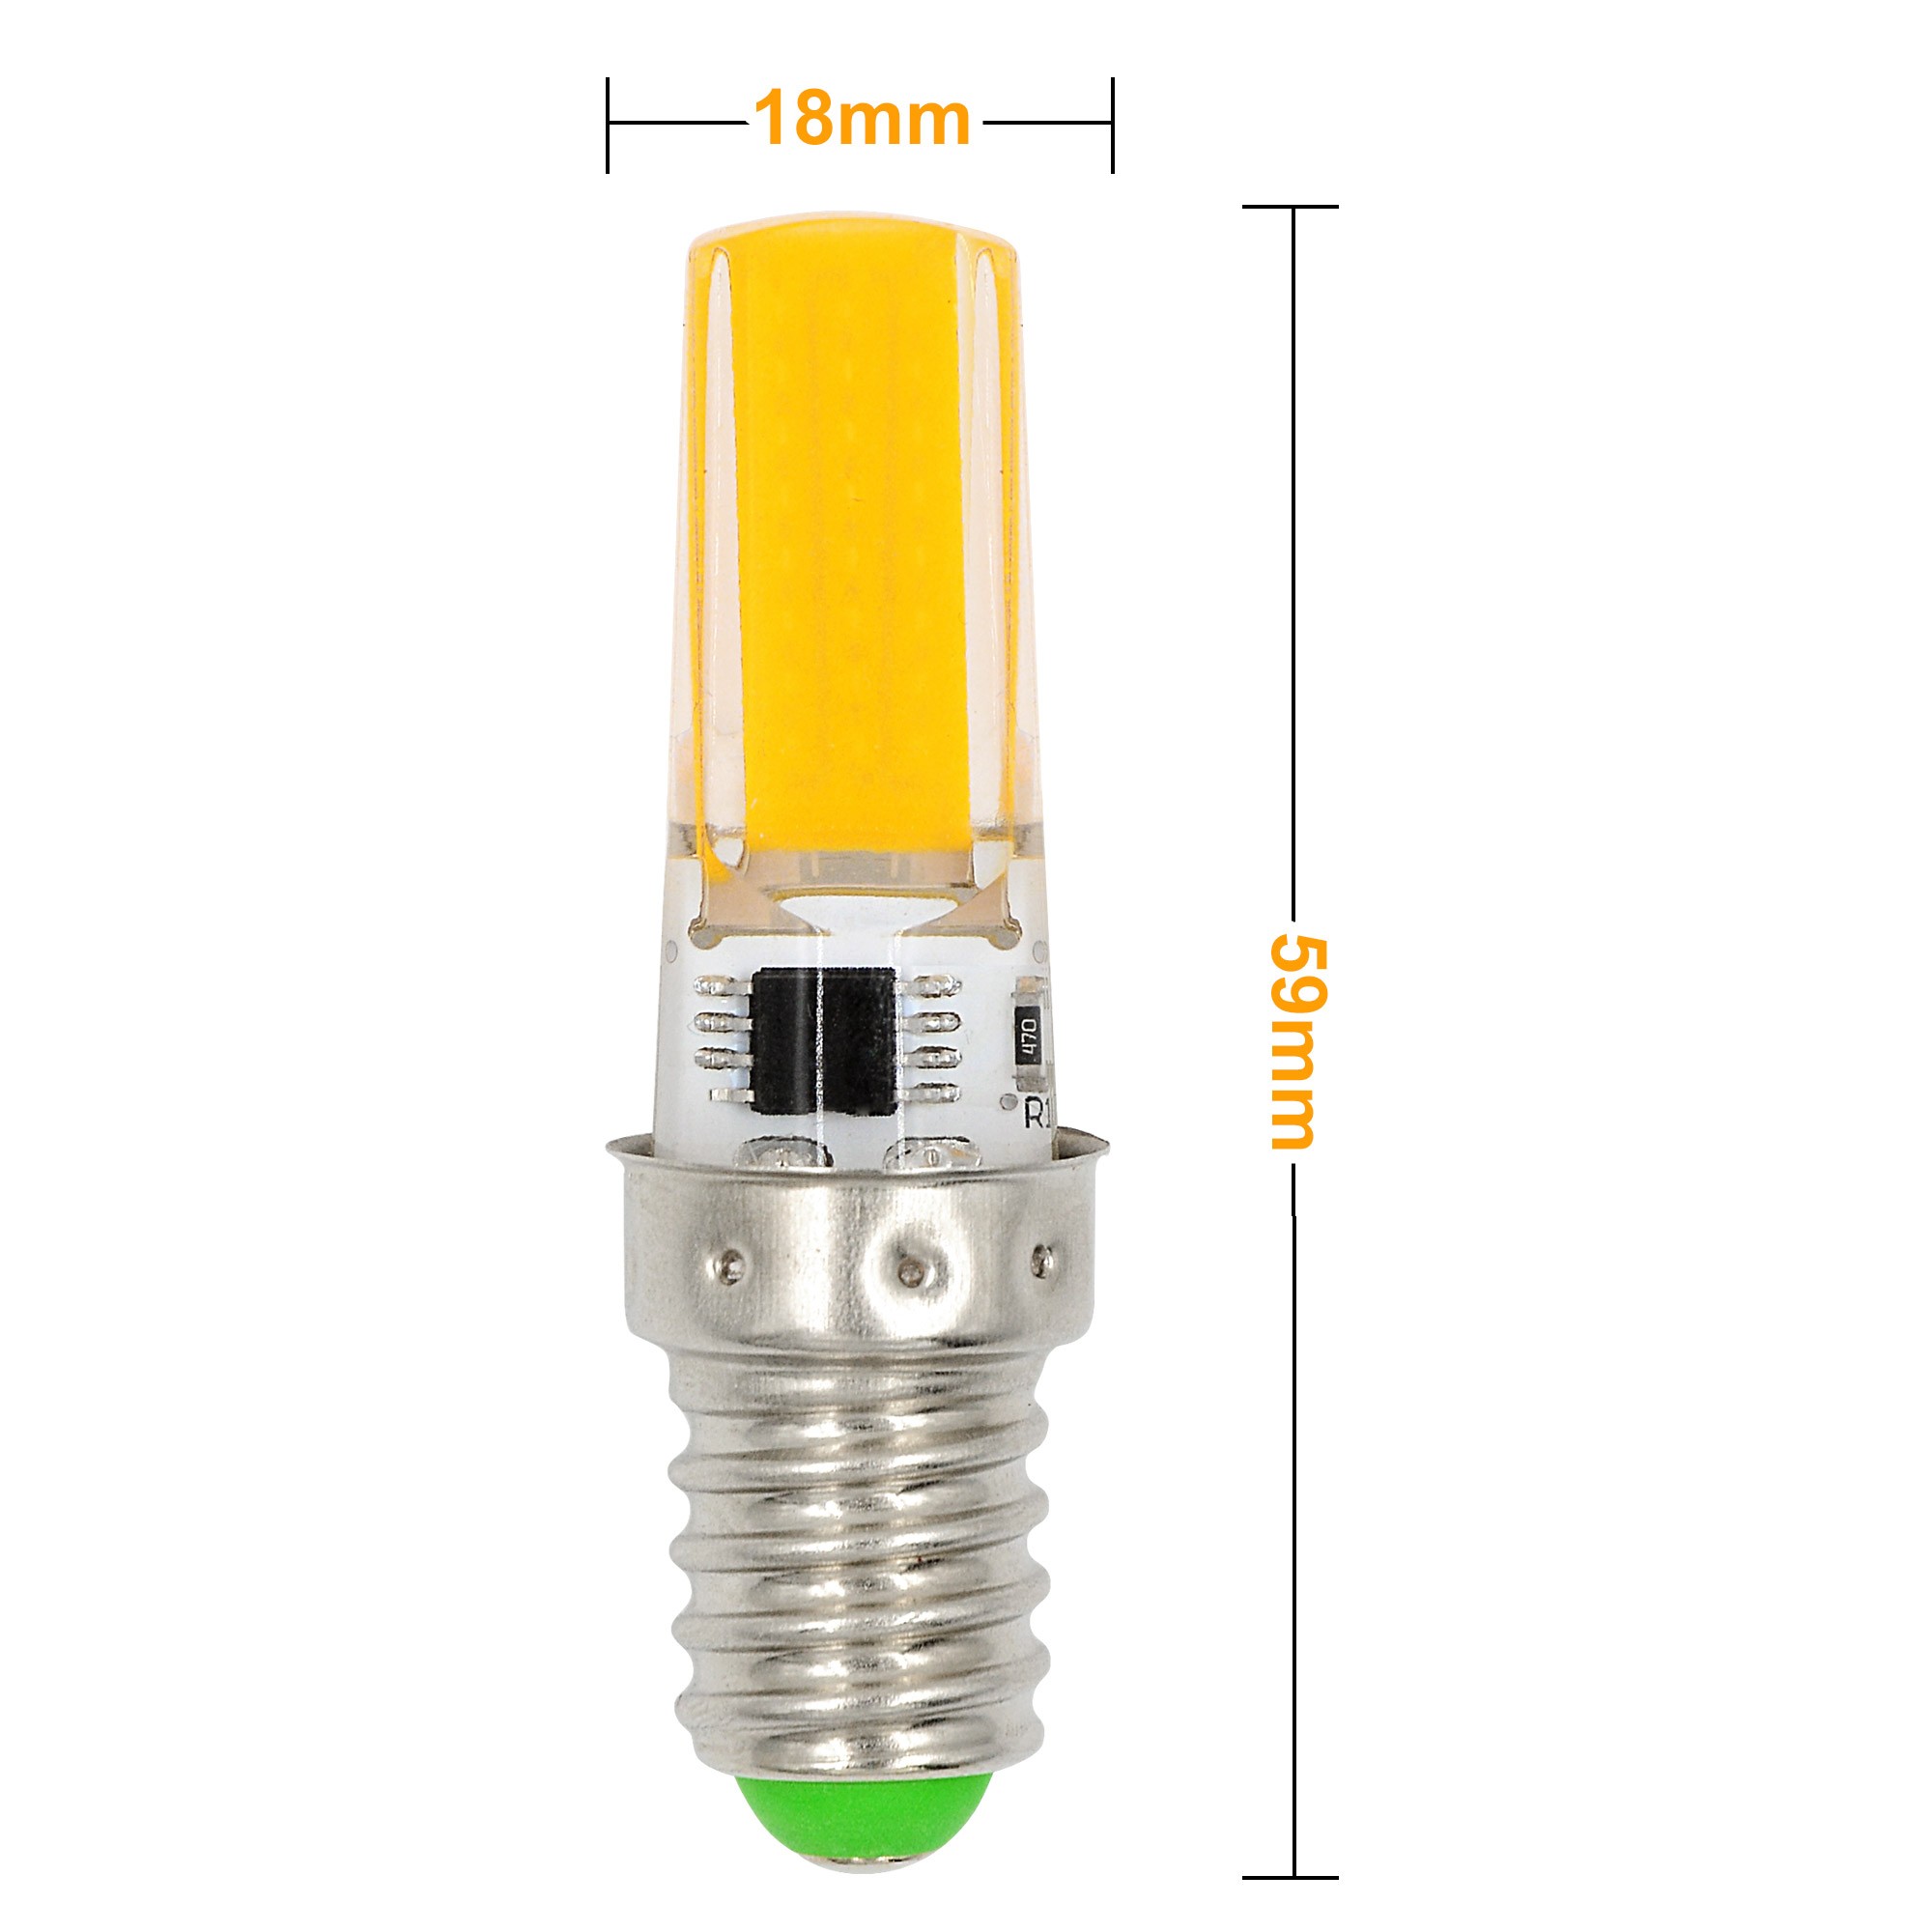 Mengsled Mengs® E14 3w Led Light Cob Led Bulb Lamp Ac 220 240v In